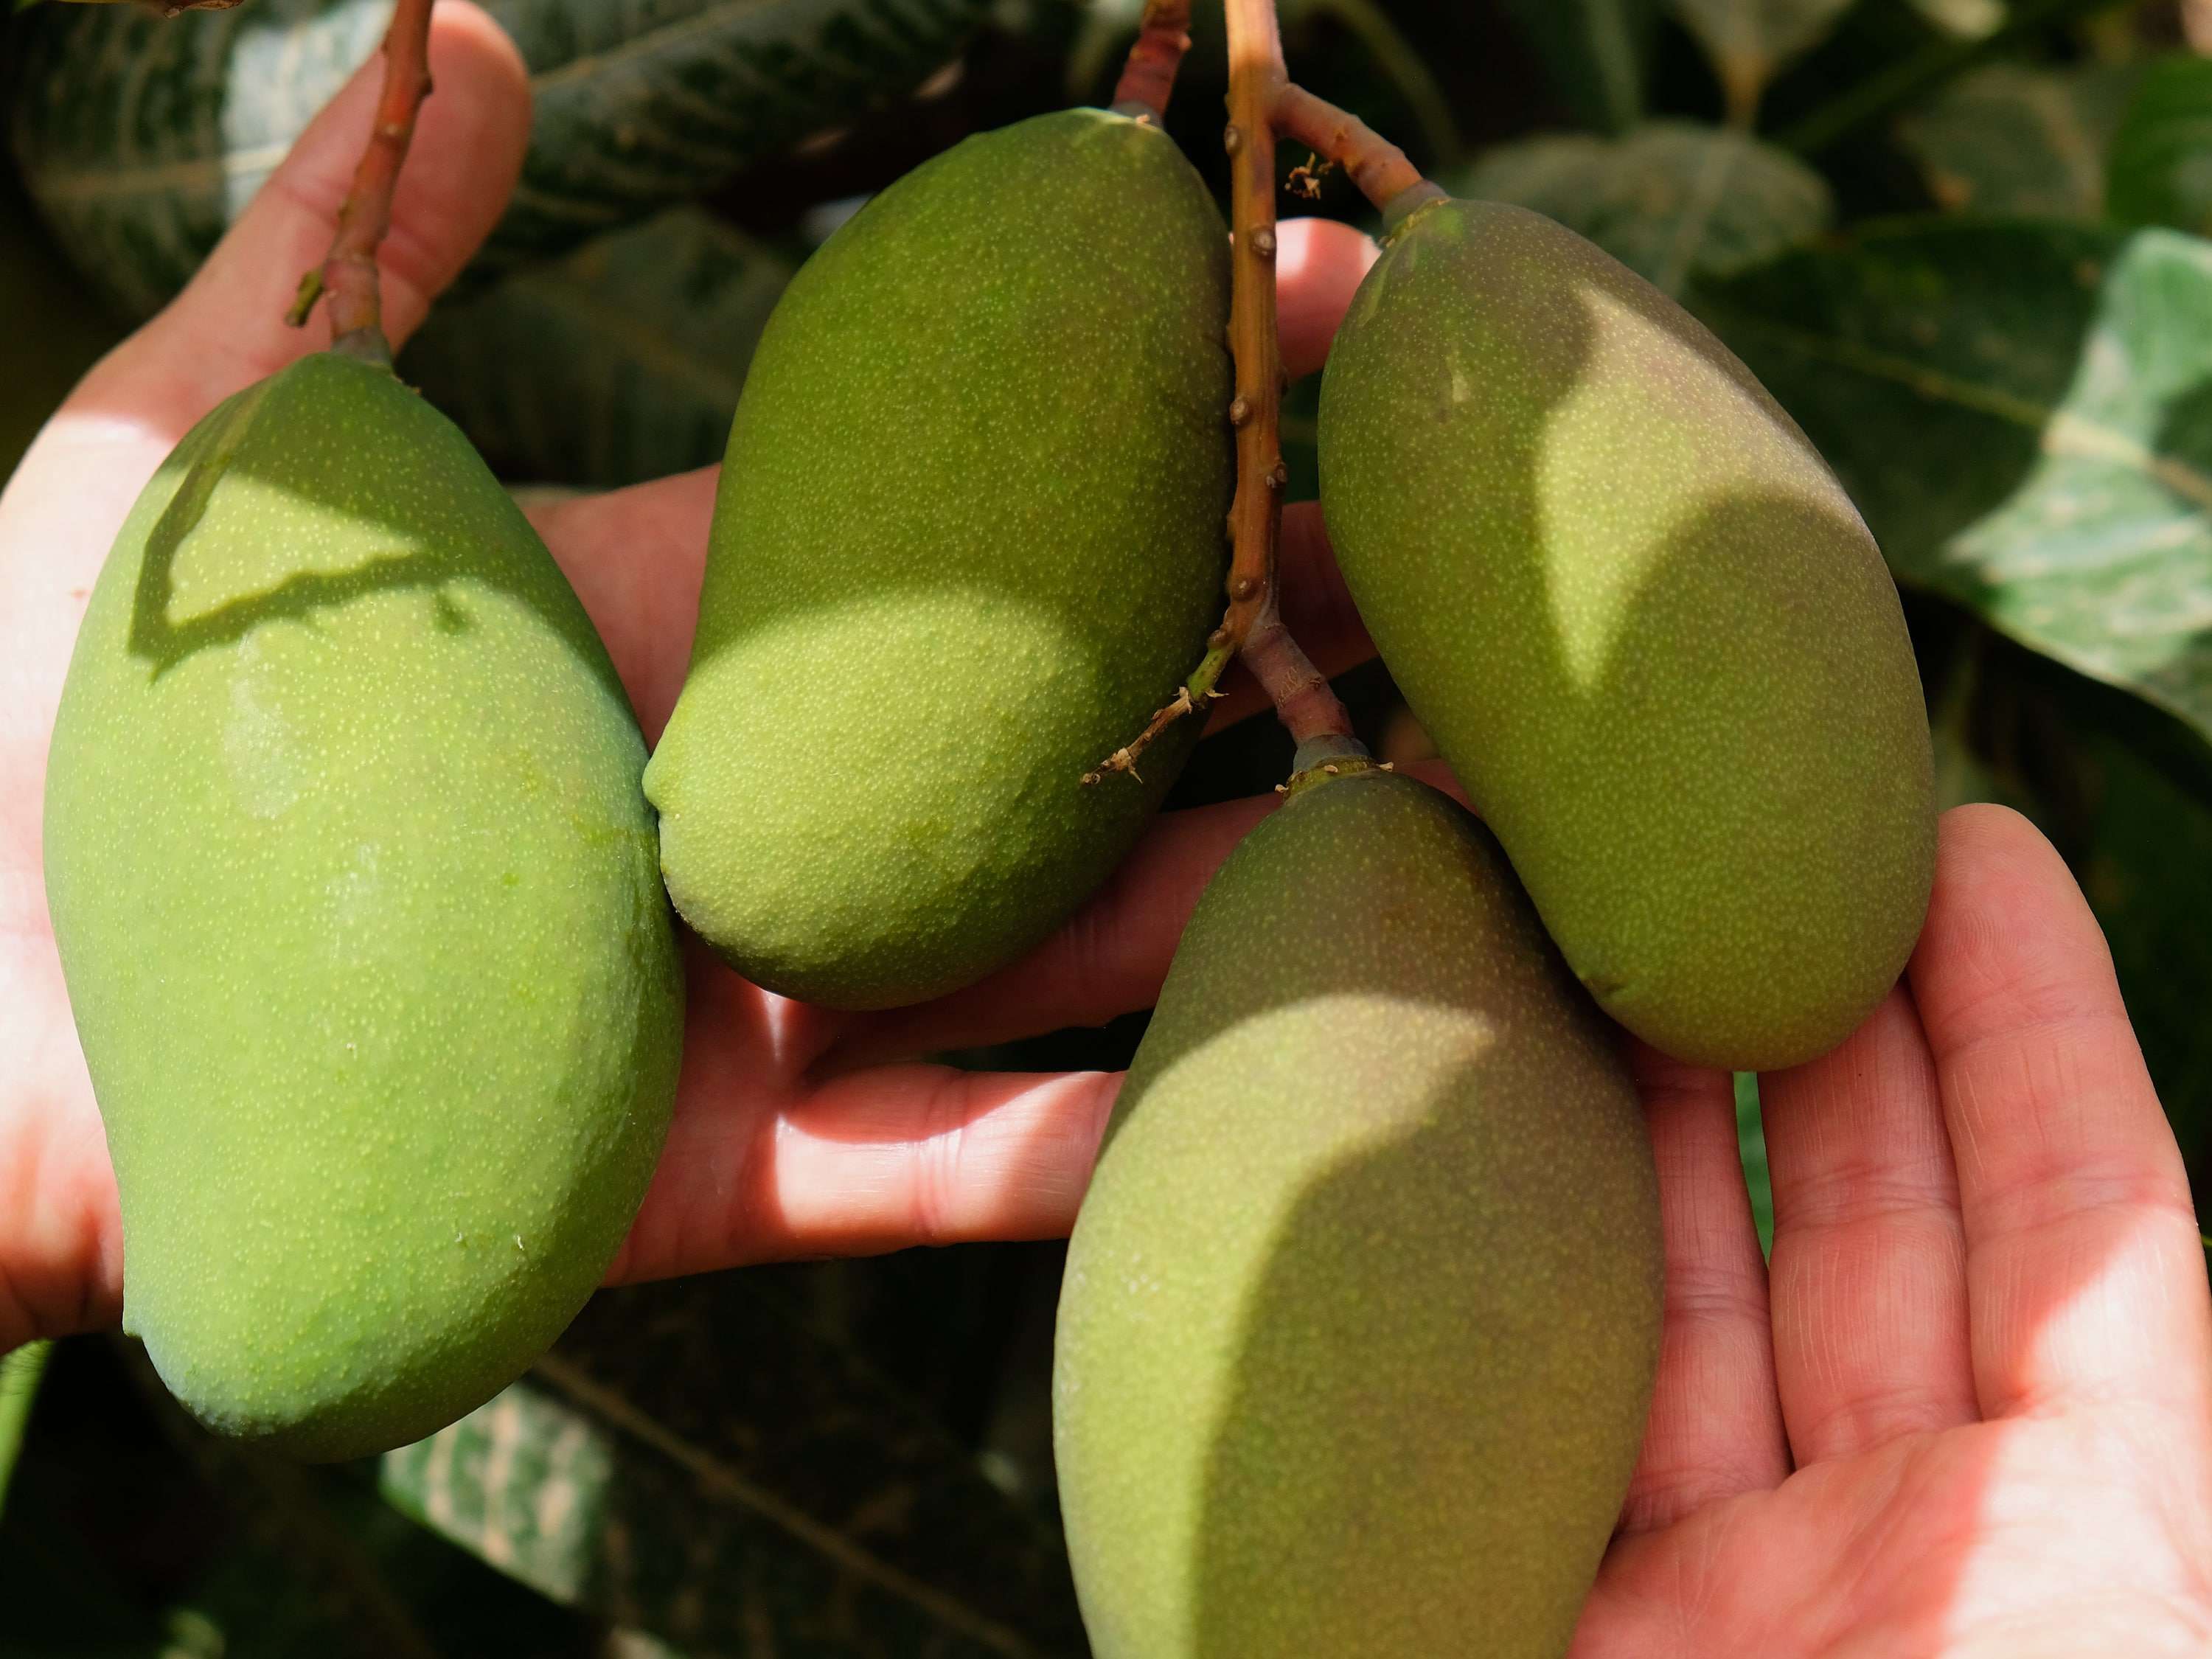 Neben Tomaten, Avocados und Maracujas werden auch Mangos erfolgreich angebaut und vermarktet.